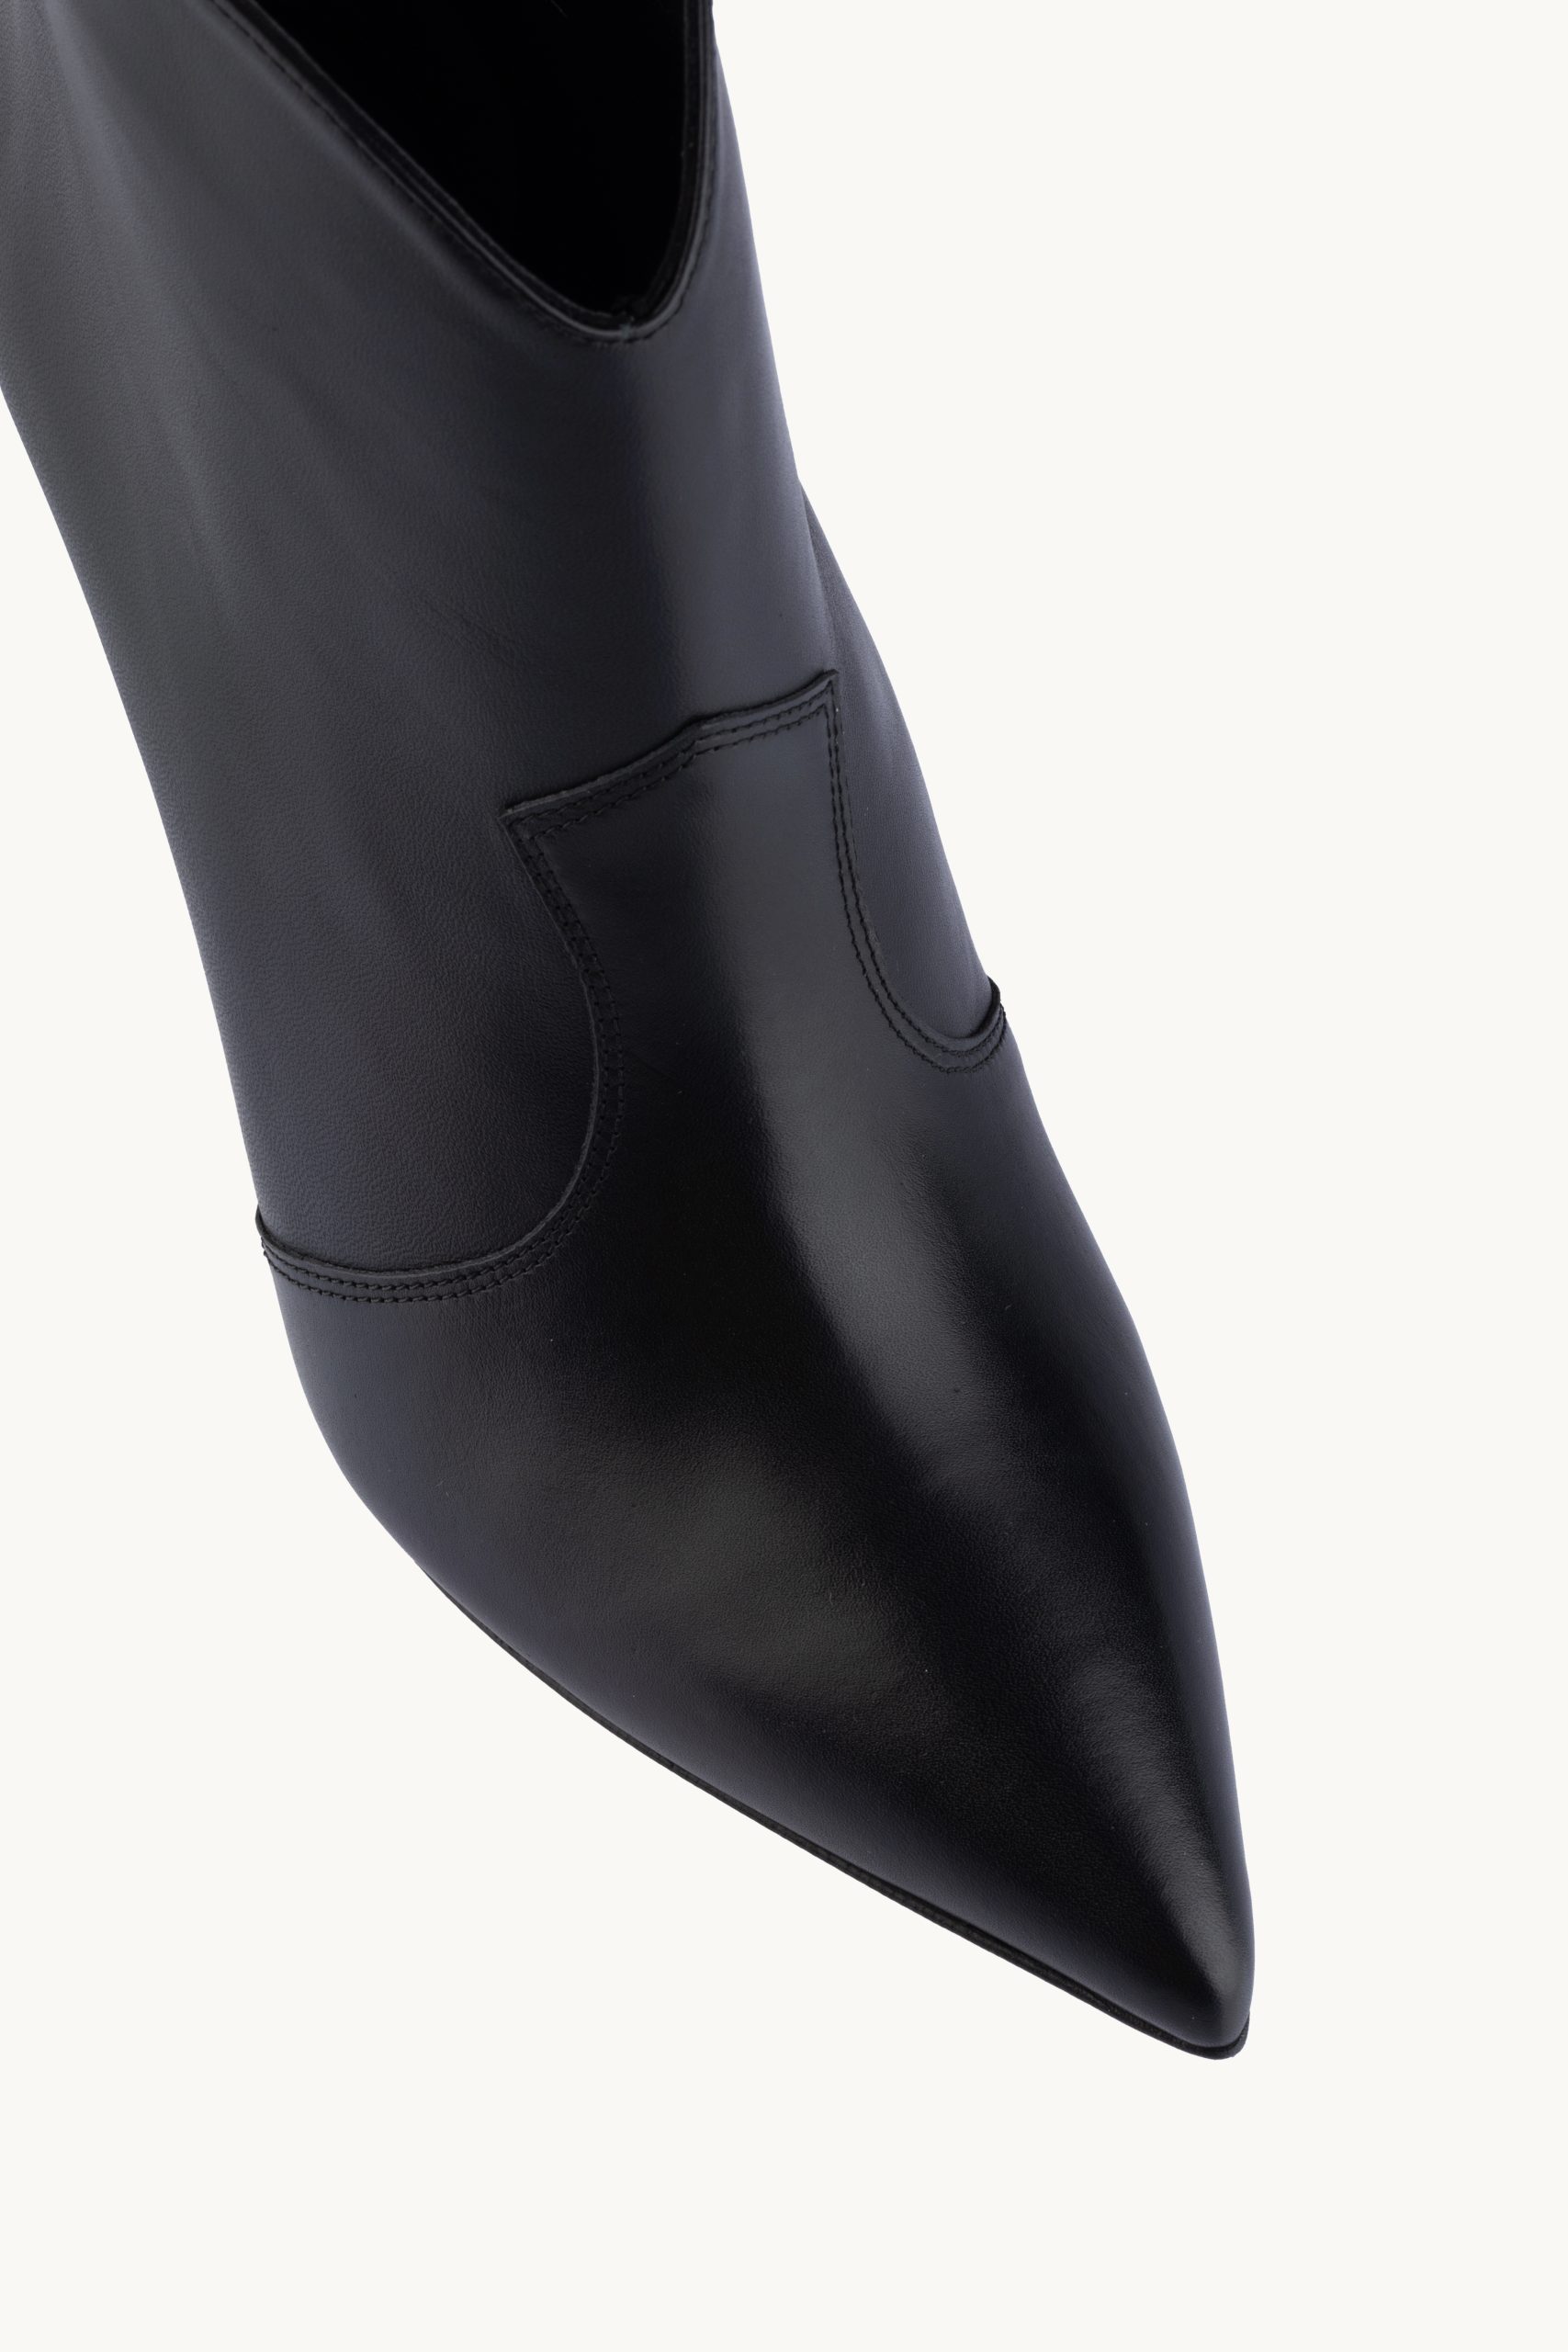 Kratke čižme - Noir Serenity su udobne crne špicaste čizme do članka sa umerenom štiklom.